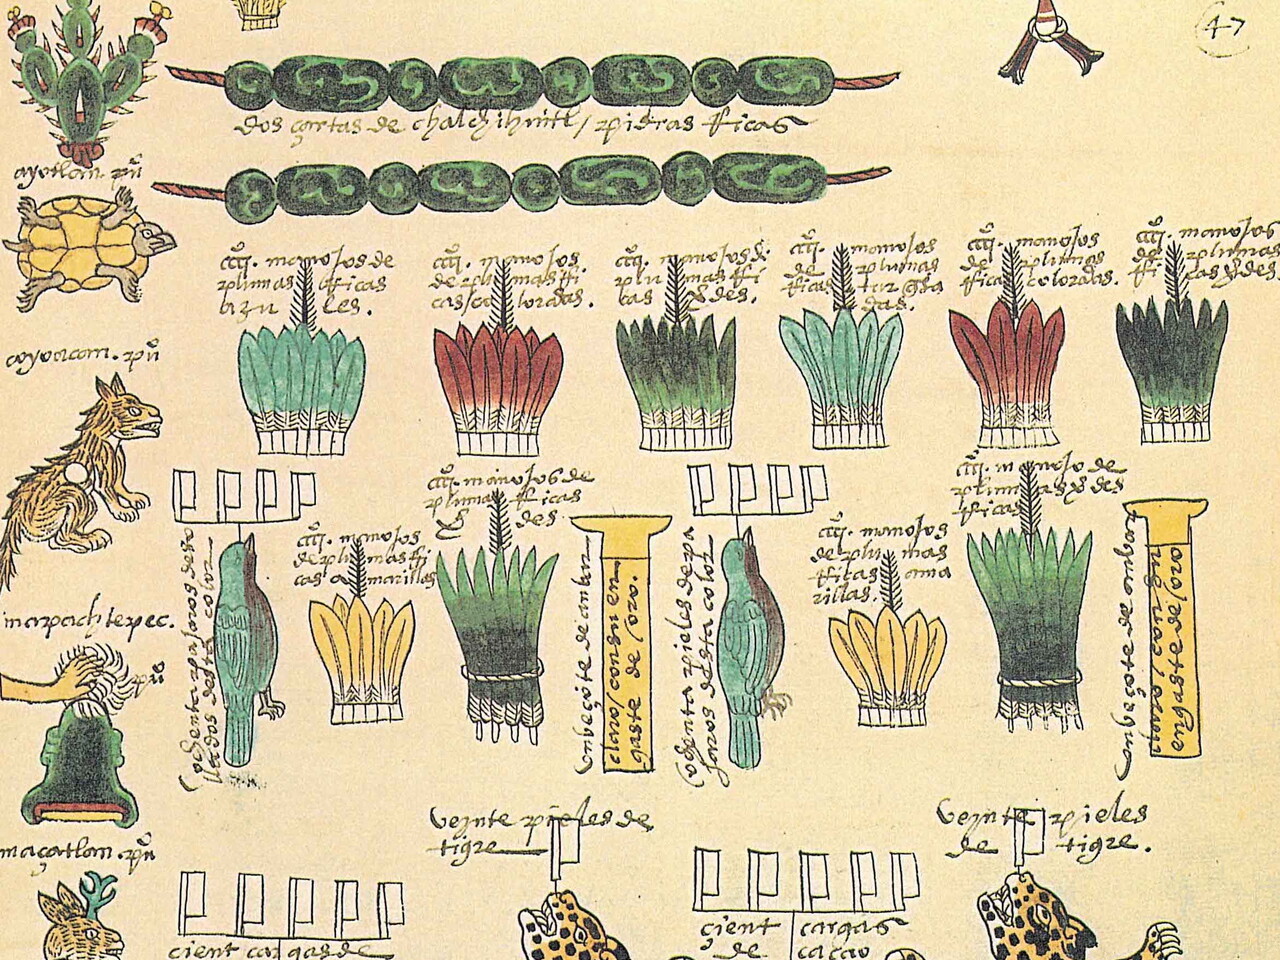 Codex Mendoza page